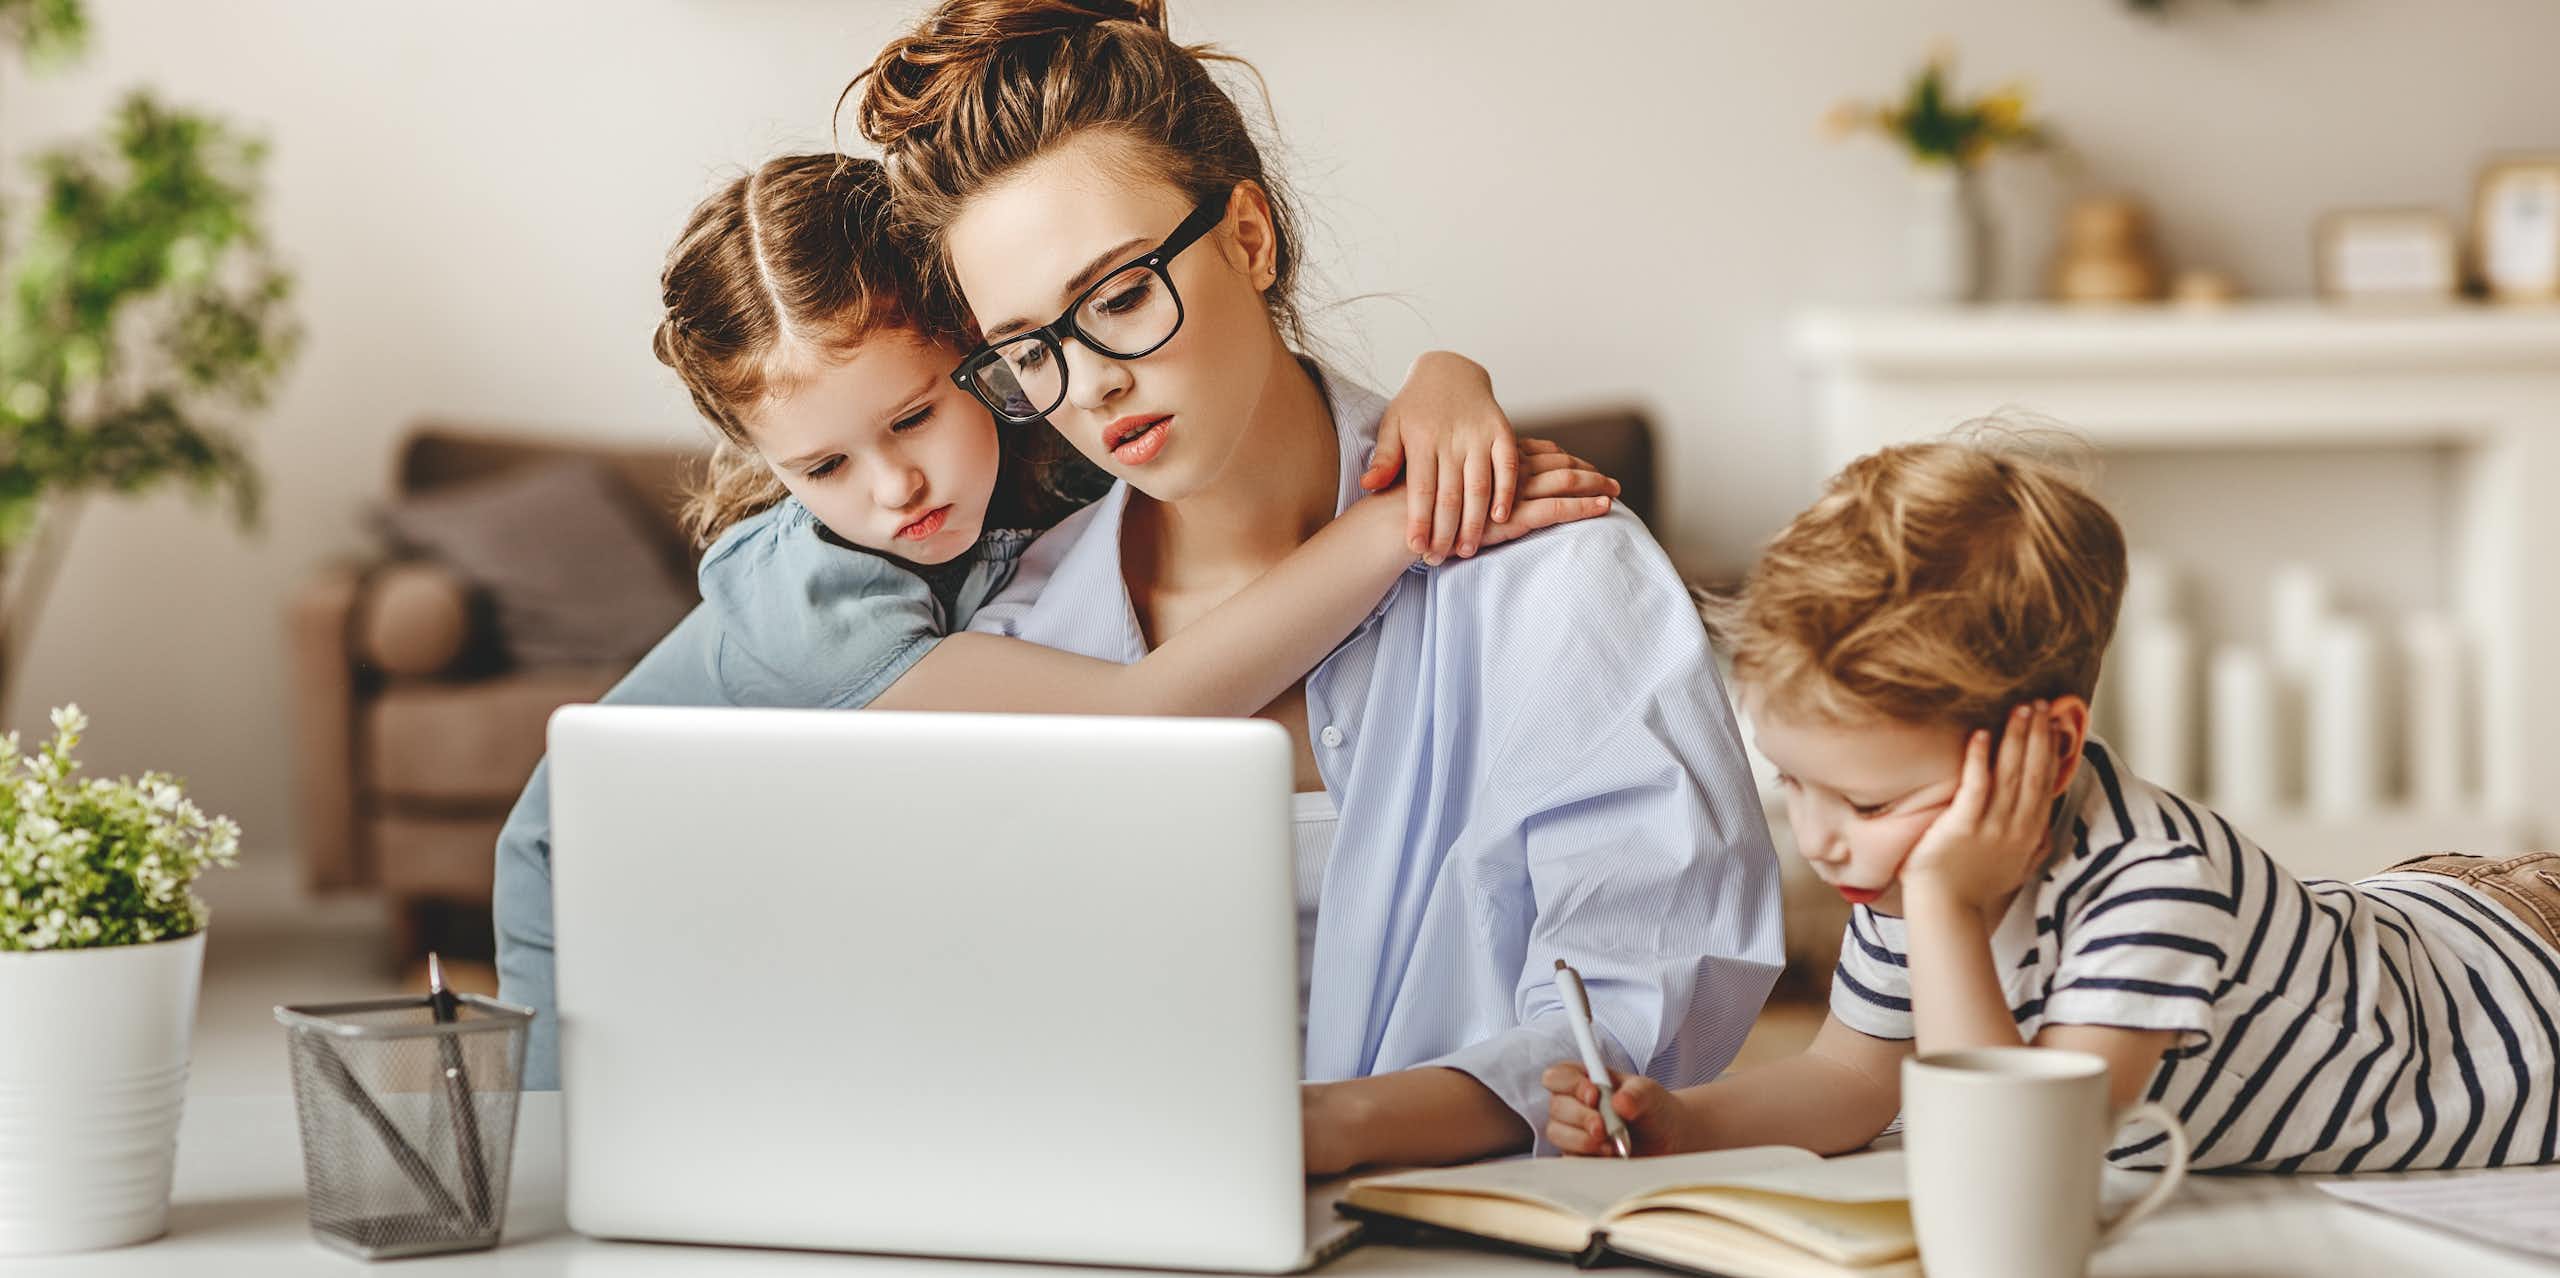 Una mujer joven escribe en el ordenador mientras una niña la abraza y un niño lee a su lado con cara de aburrido.